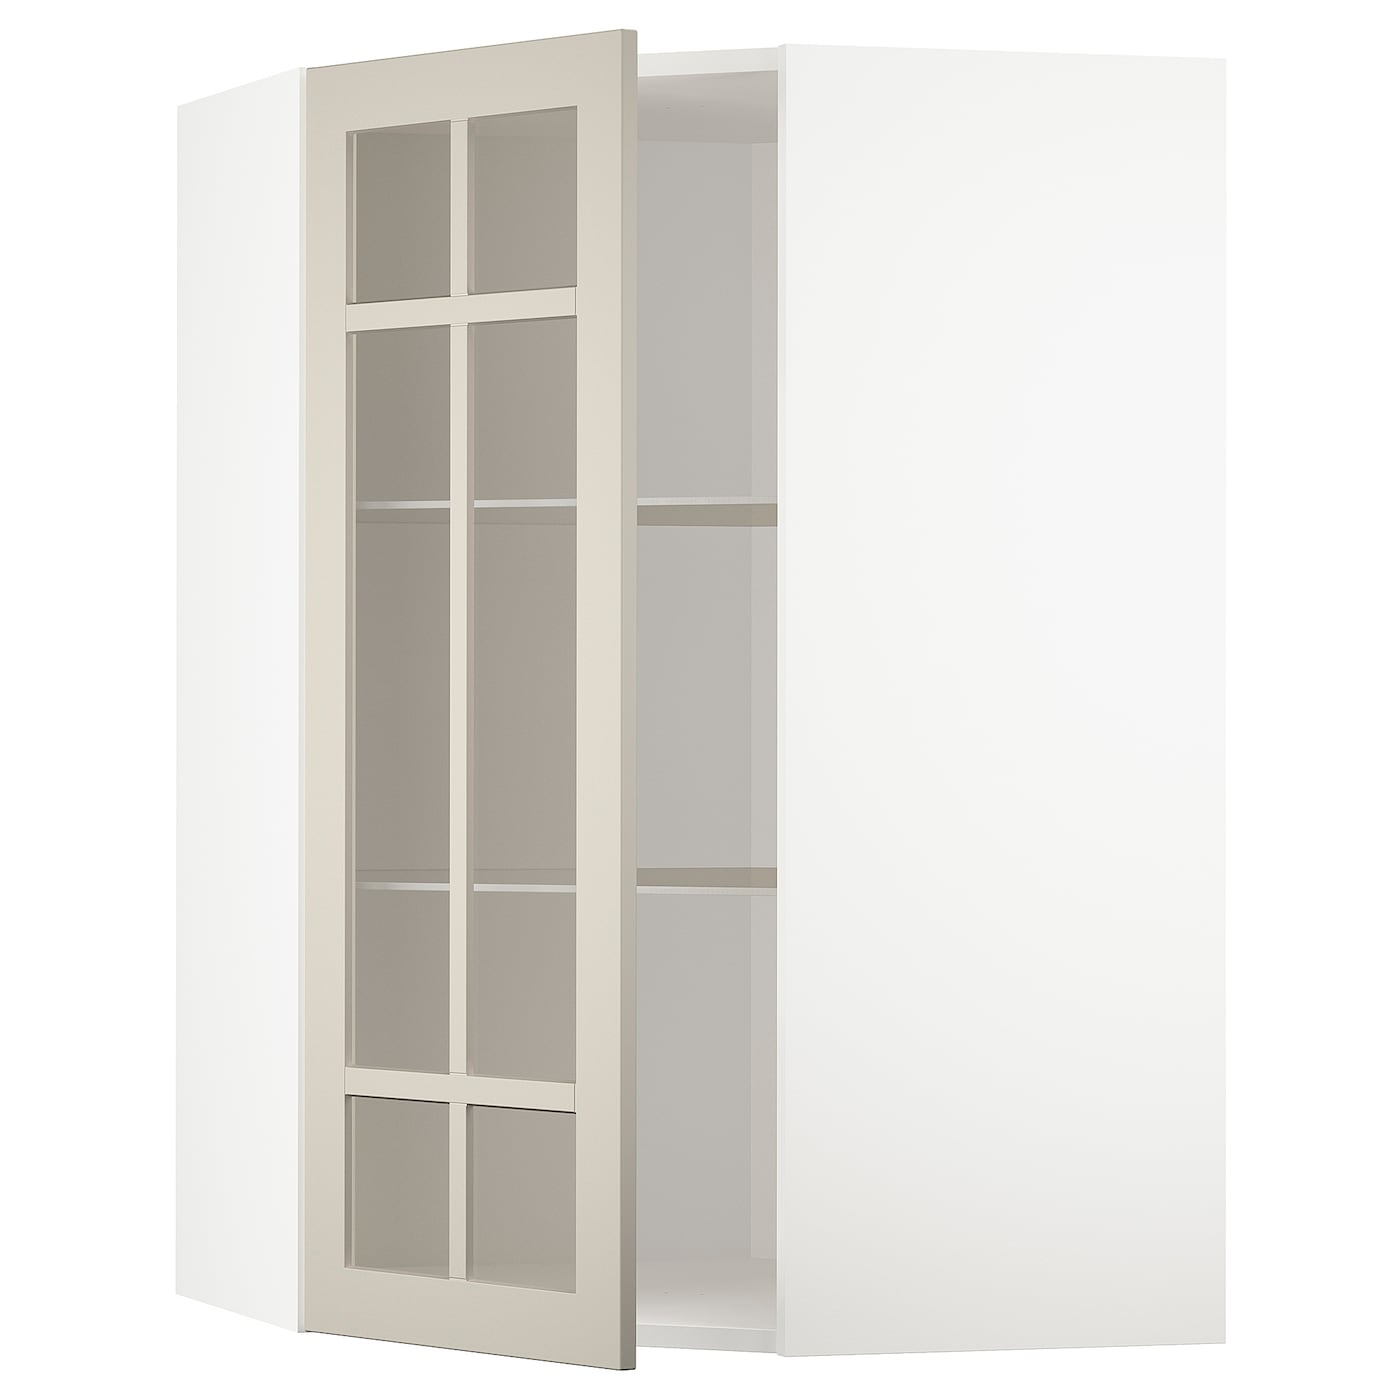 Шкаф  с дверцами и  стеклянной полочкой  - METOD IKEA/ МЕТОД ИКЕА, 68х100 см, белый/светло-бежевый